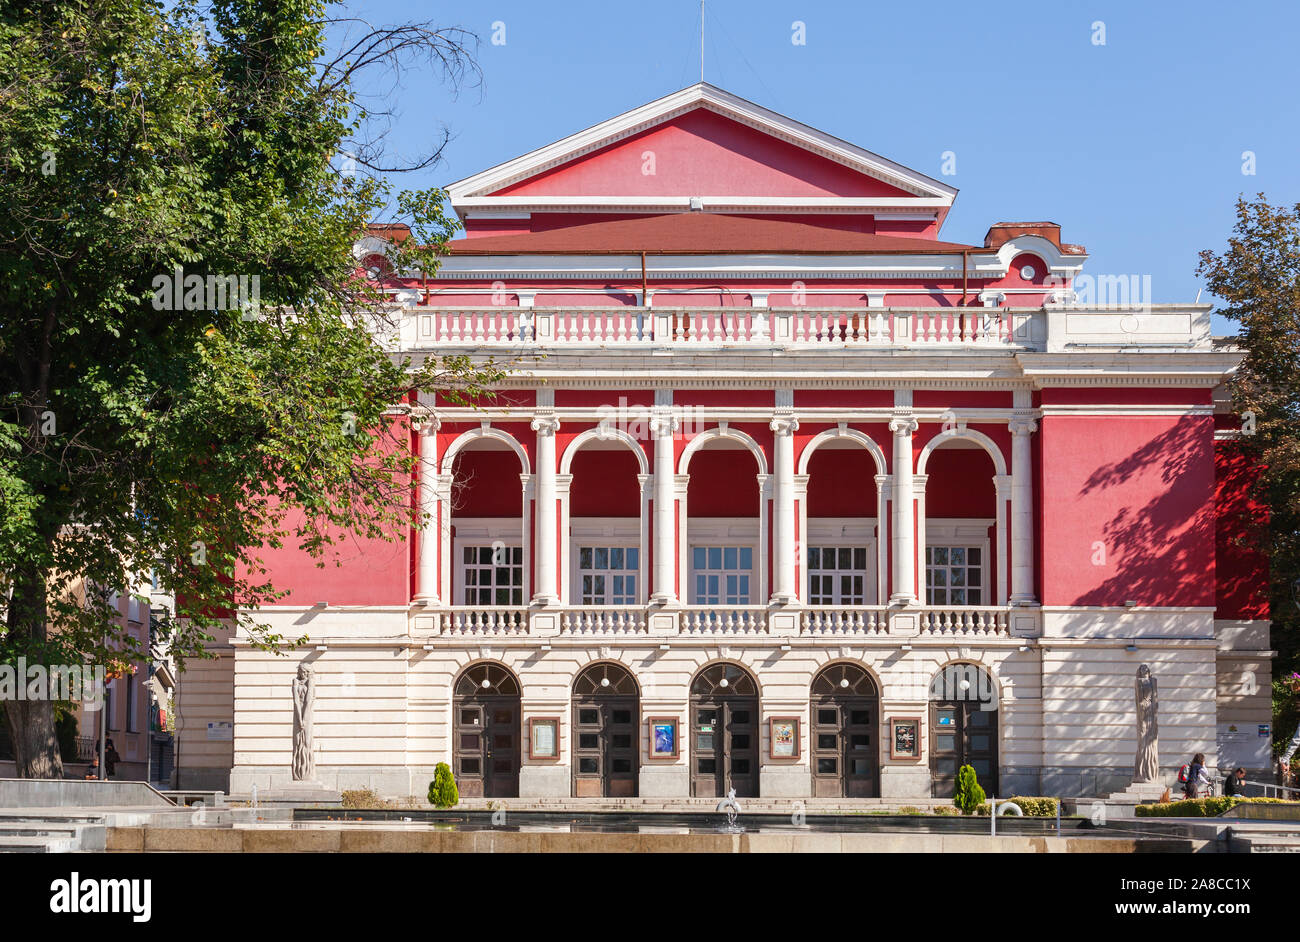 Ruse, Bulgarie - 29 septembre 2014 : Bulgarian National Opera House de Ruse à jour d'été, les gens ordinaires à pied la rue Banque D'Images